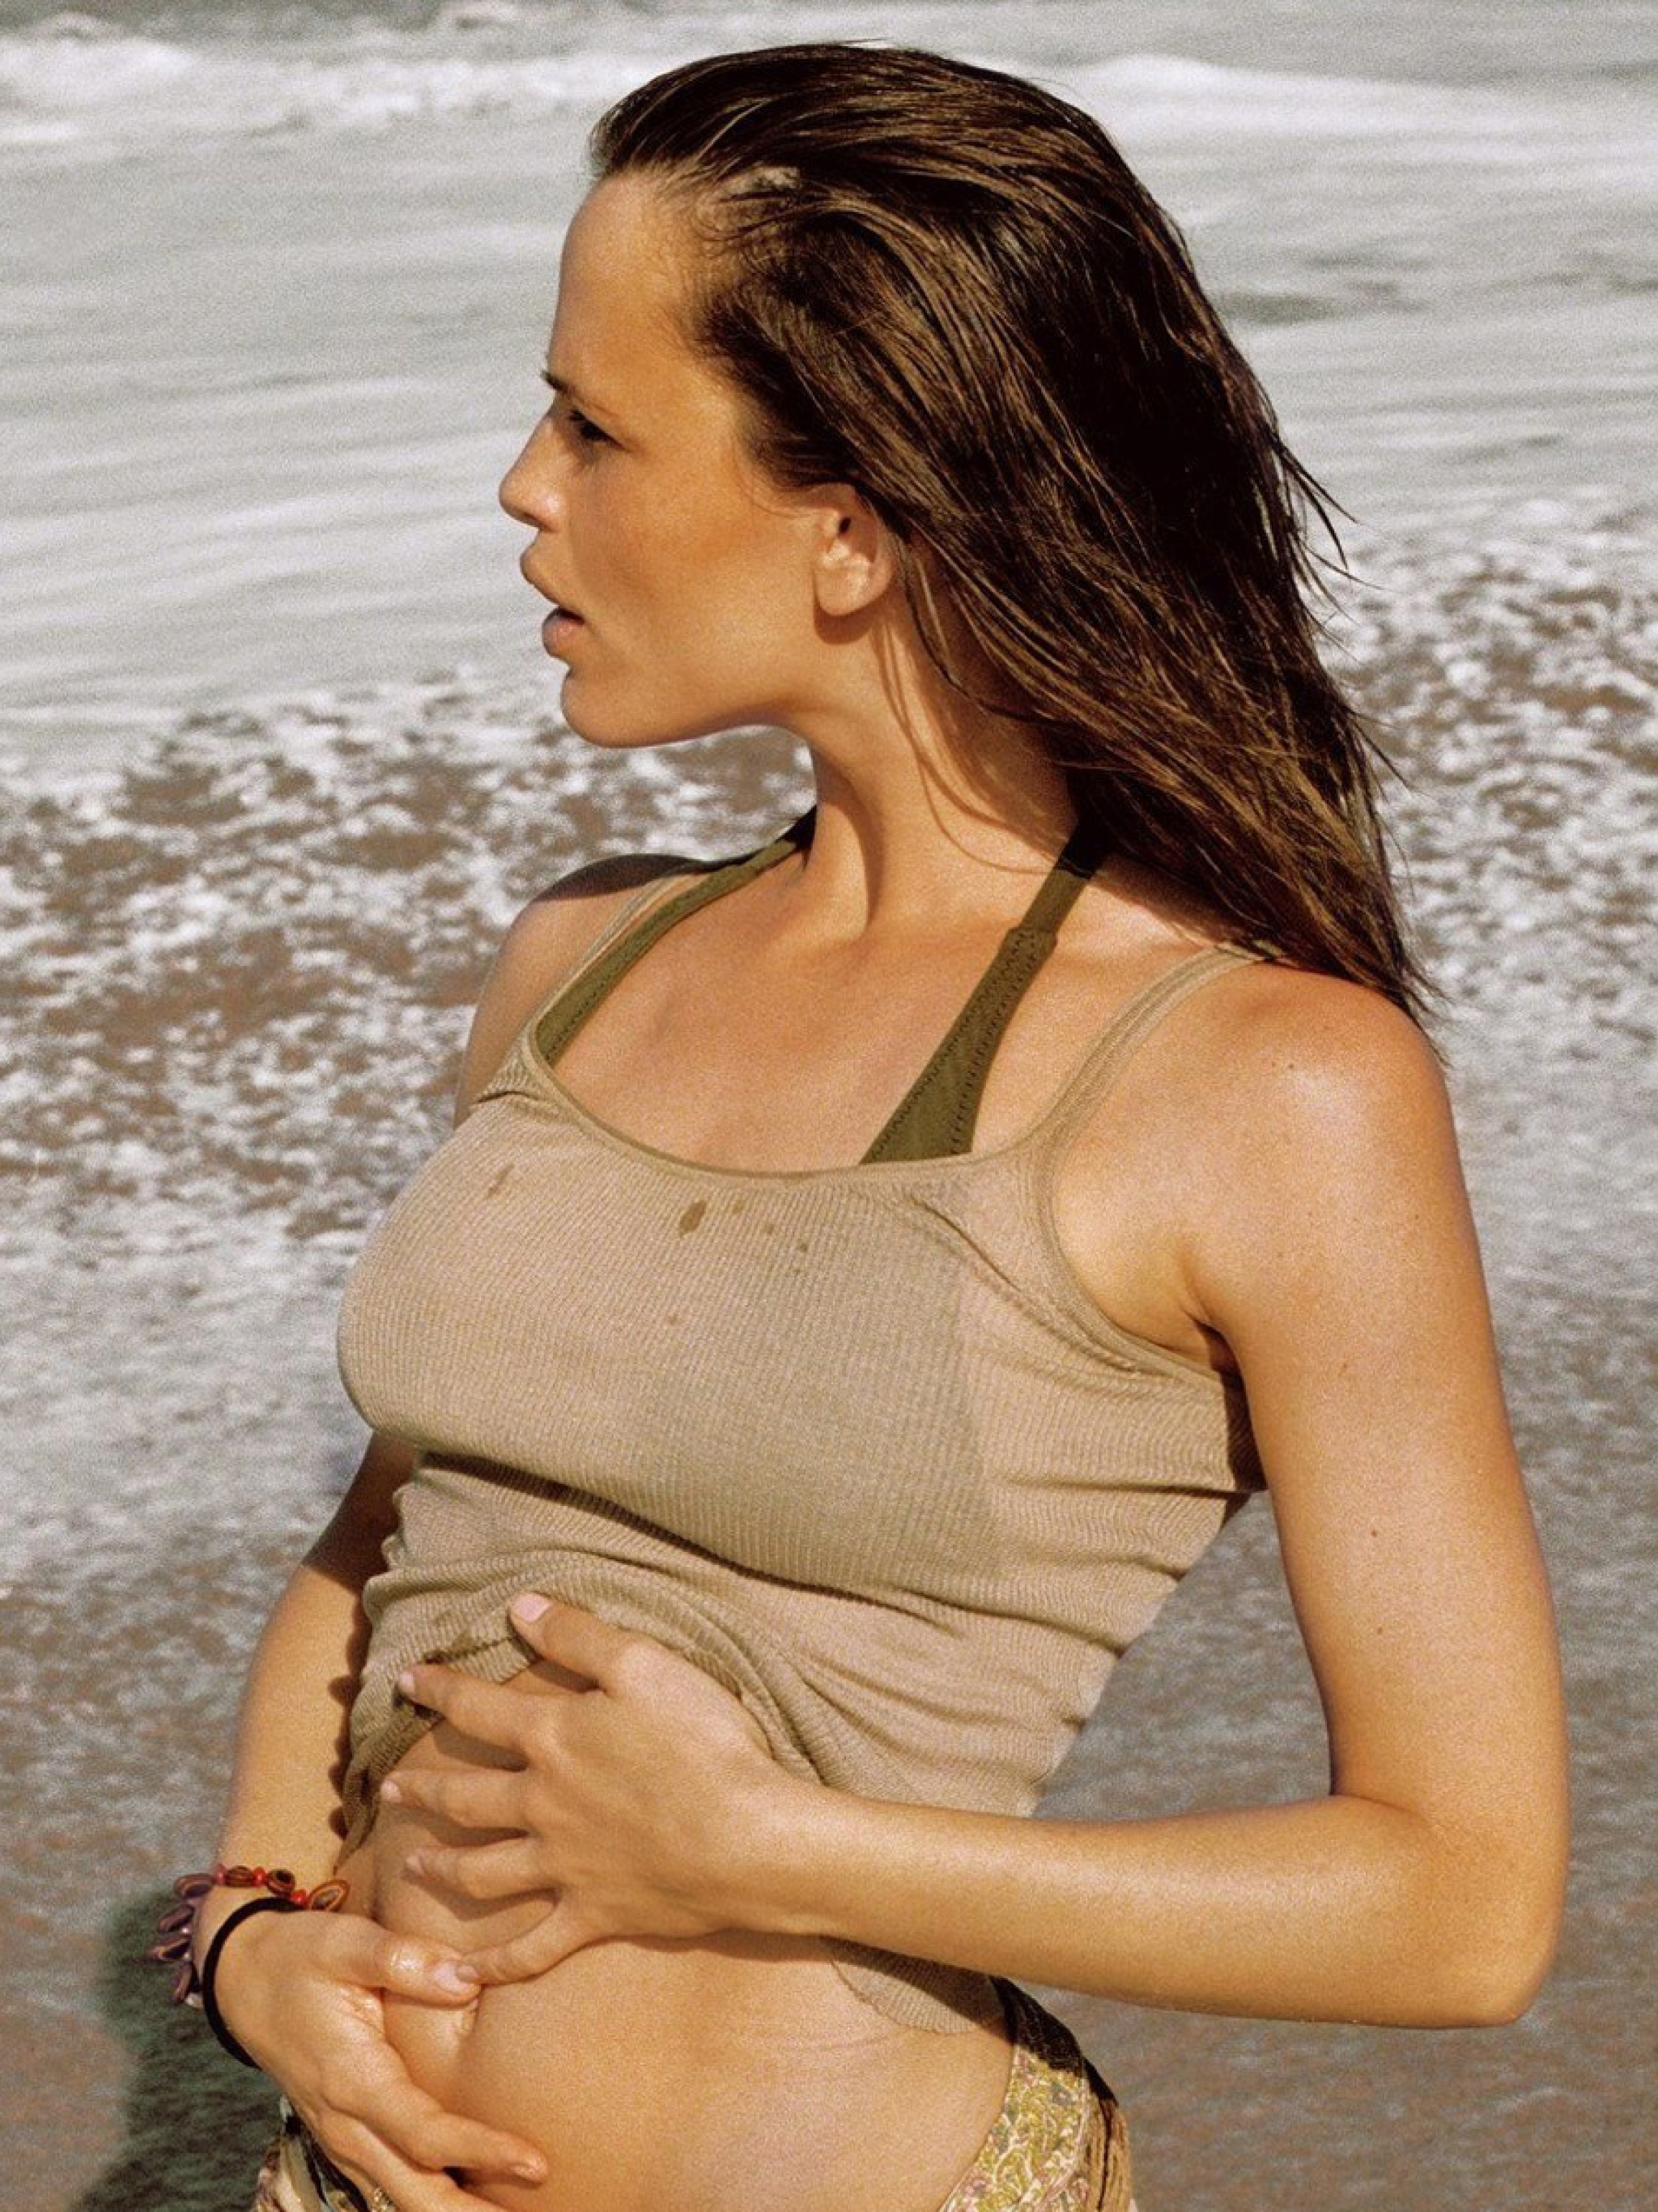 Hot jennifer pictures garner Jennifer Garner: